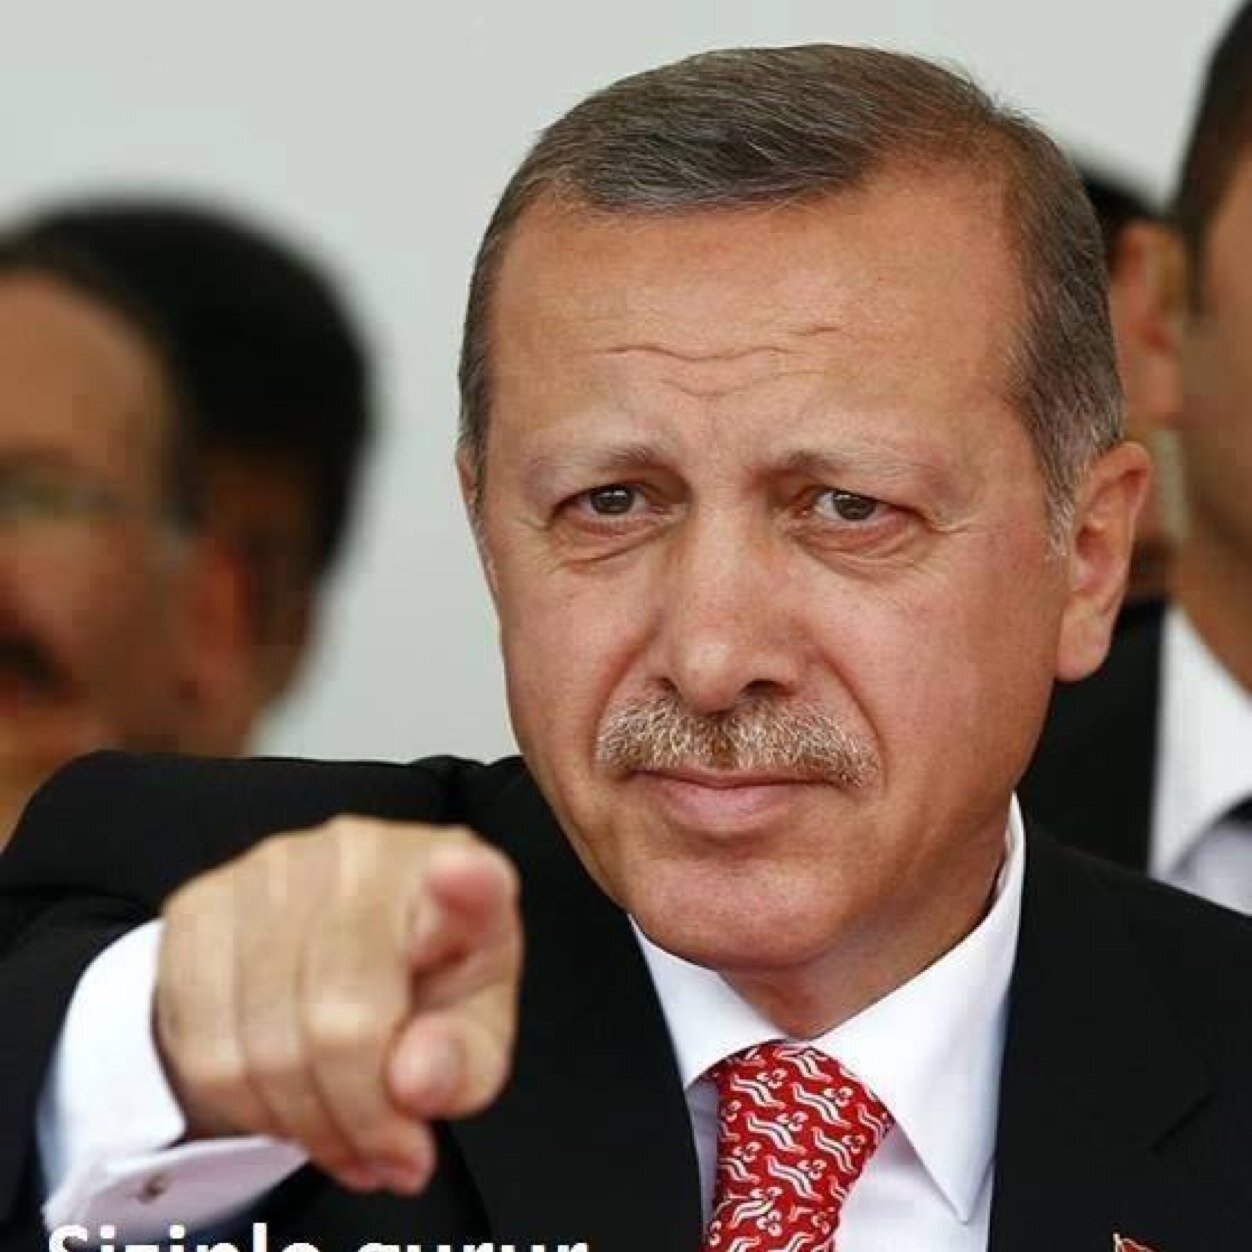 Erdoğan’dan ABD’ye New York Times Üzerinden Yanıt: Saygısızlık Sürerse Yeni Müttefikler Aramaya Başlayacağız